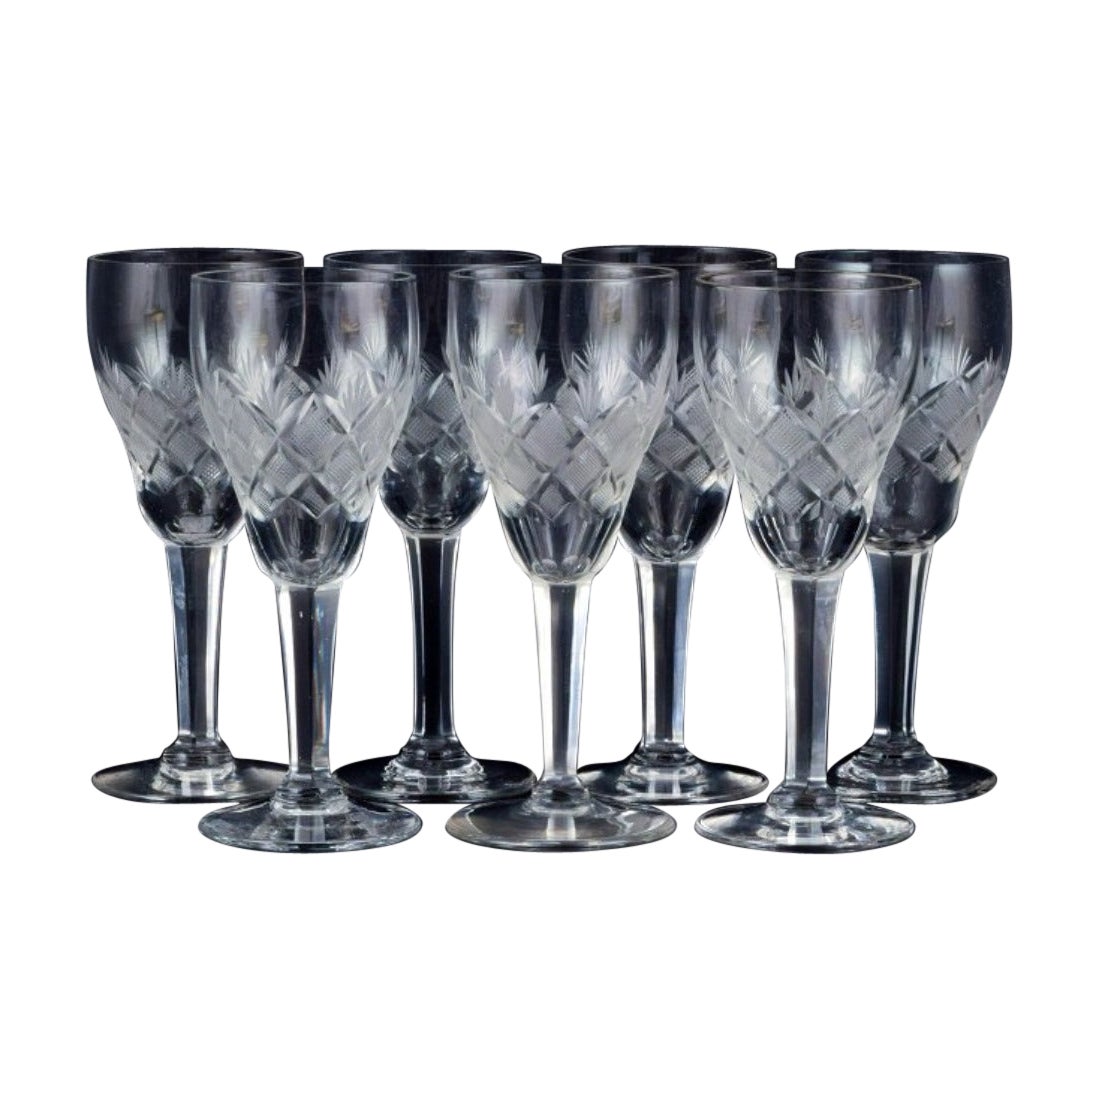 Wien Antik, Lyngby Glas, Denmark, Seven Clear Port Wine Glasses For Sale